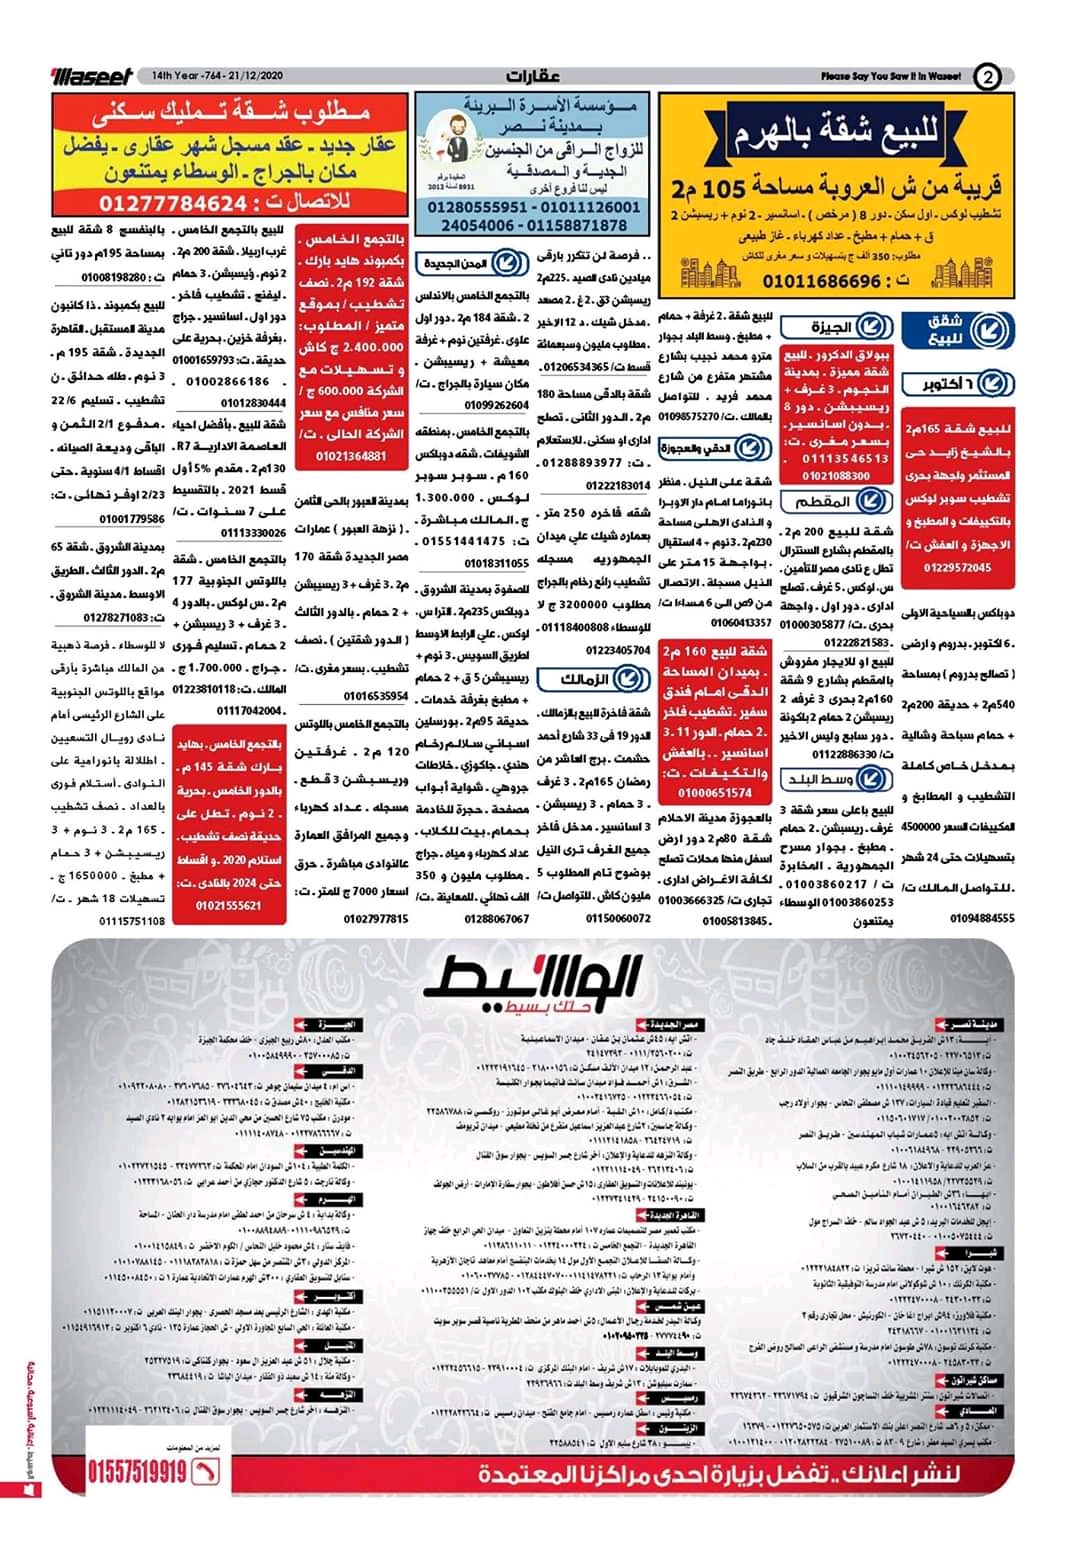 وظائف الوسيط و اعلانات مصر الاثنين 21 ديسمبر 2020